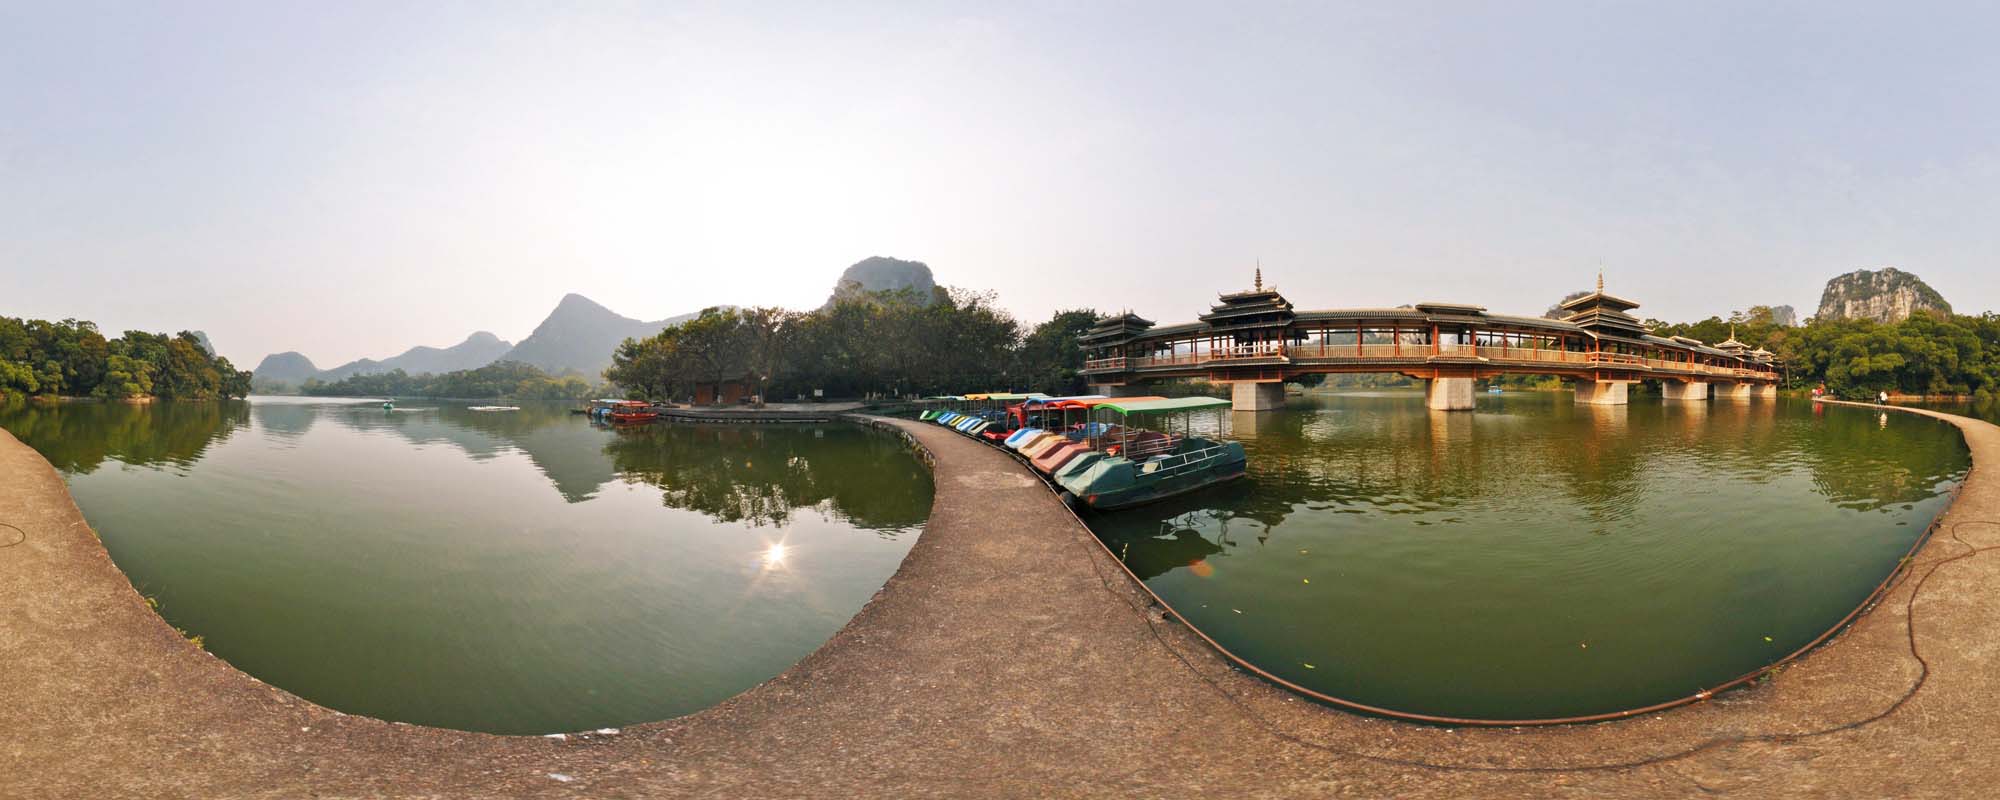 柳州虚拟旅游